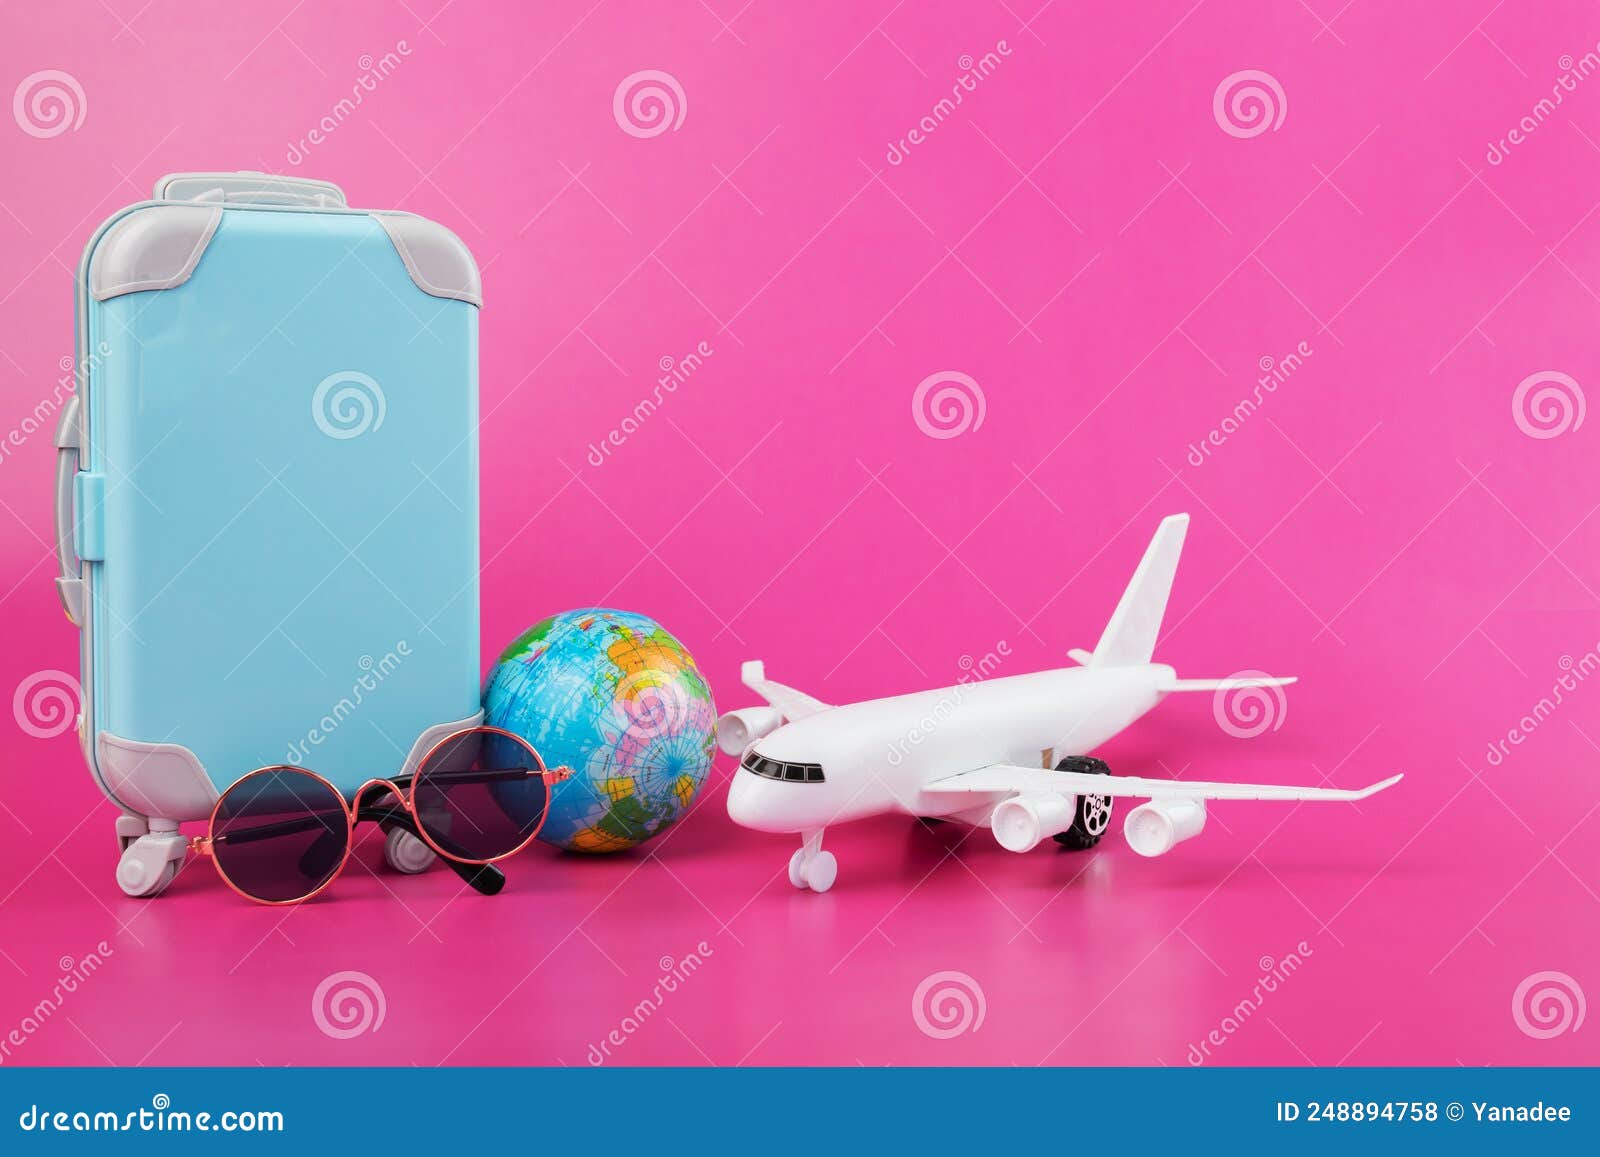 Accesorios De Smartphone Para Viajar En El Avión En Azul Y Rosa Foto de  archivo - Imagen de concepto, accesorios: 95579162